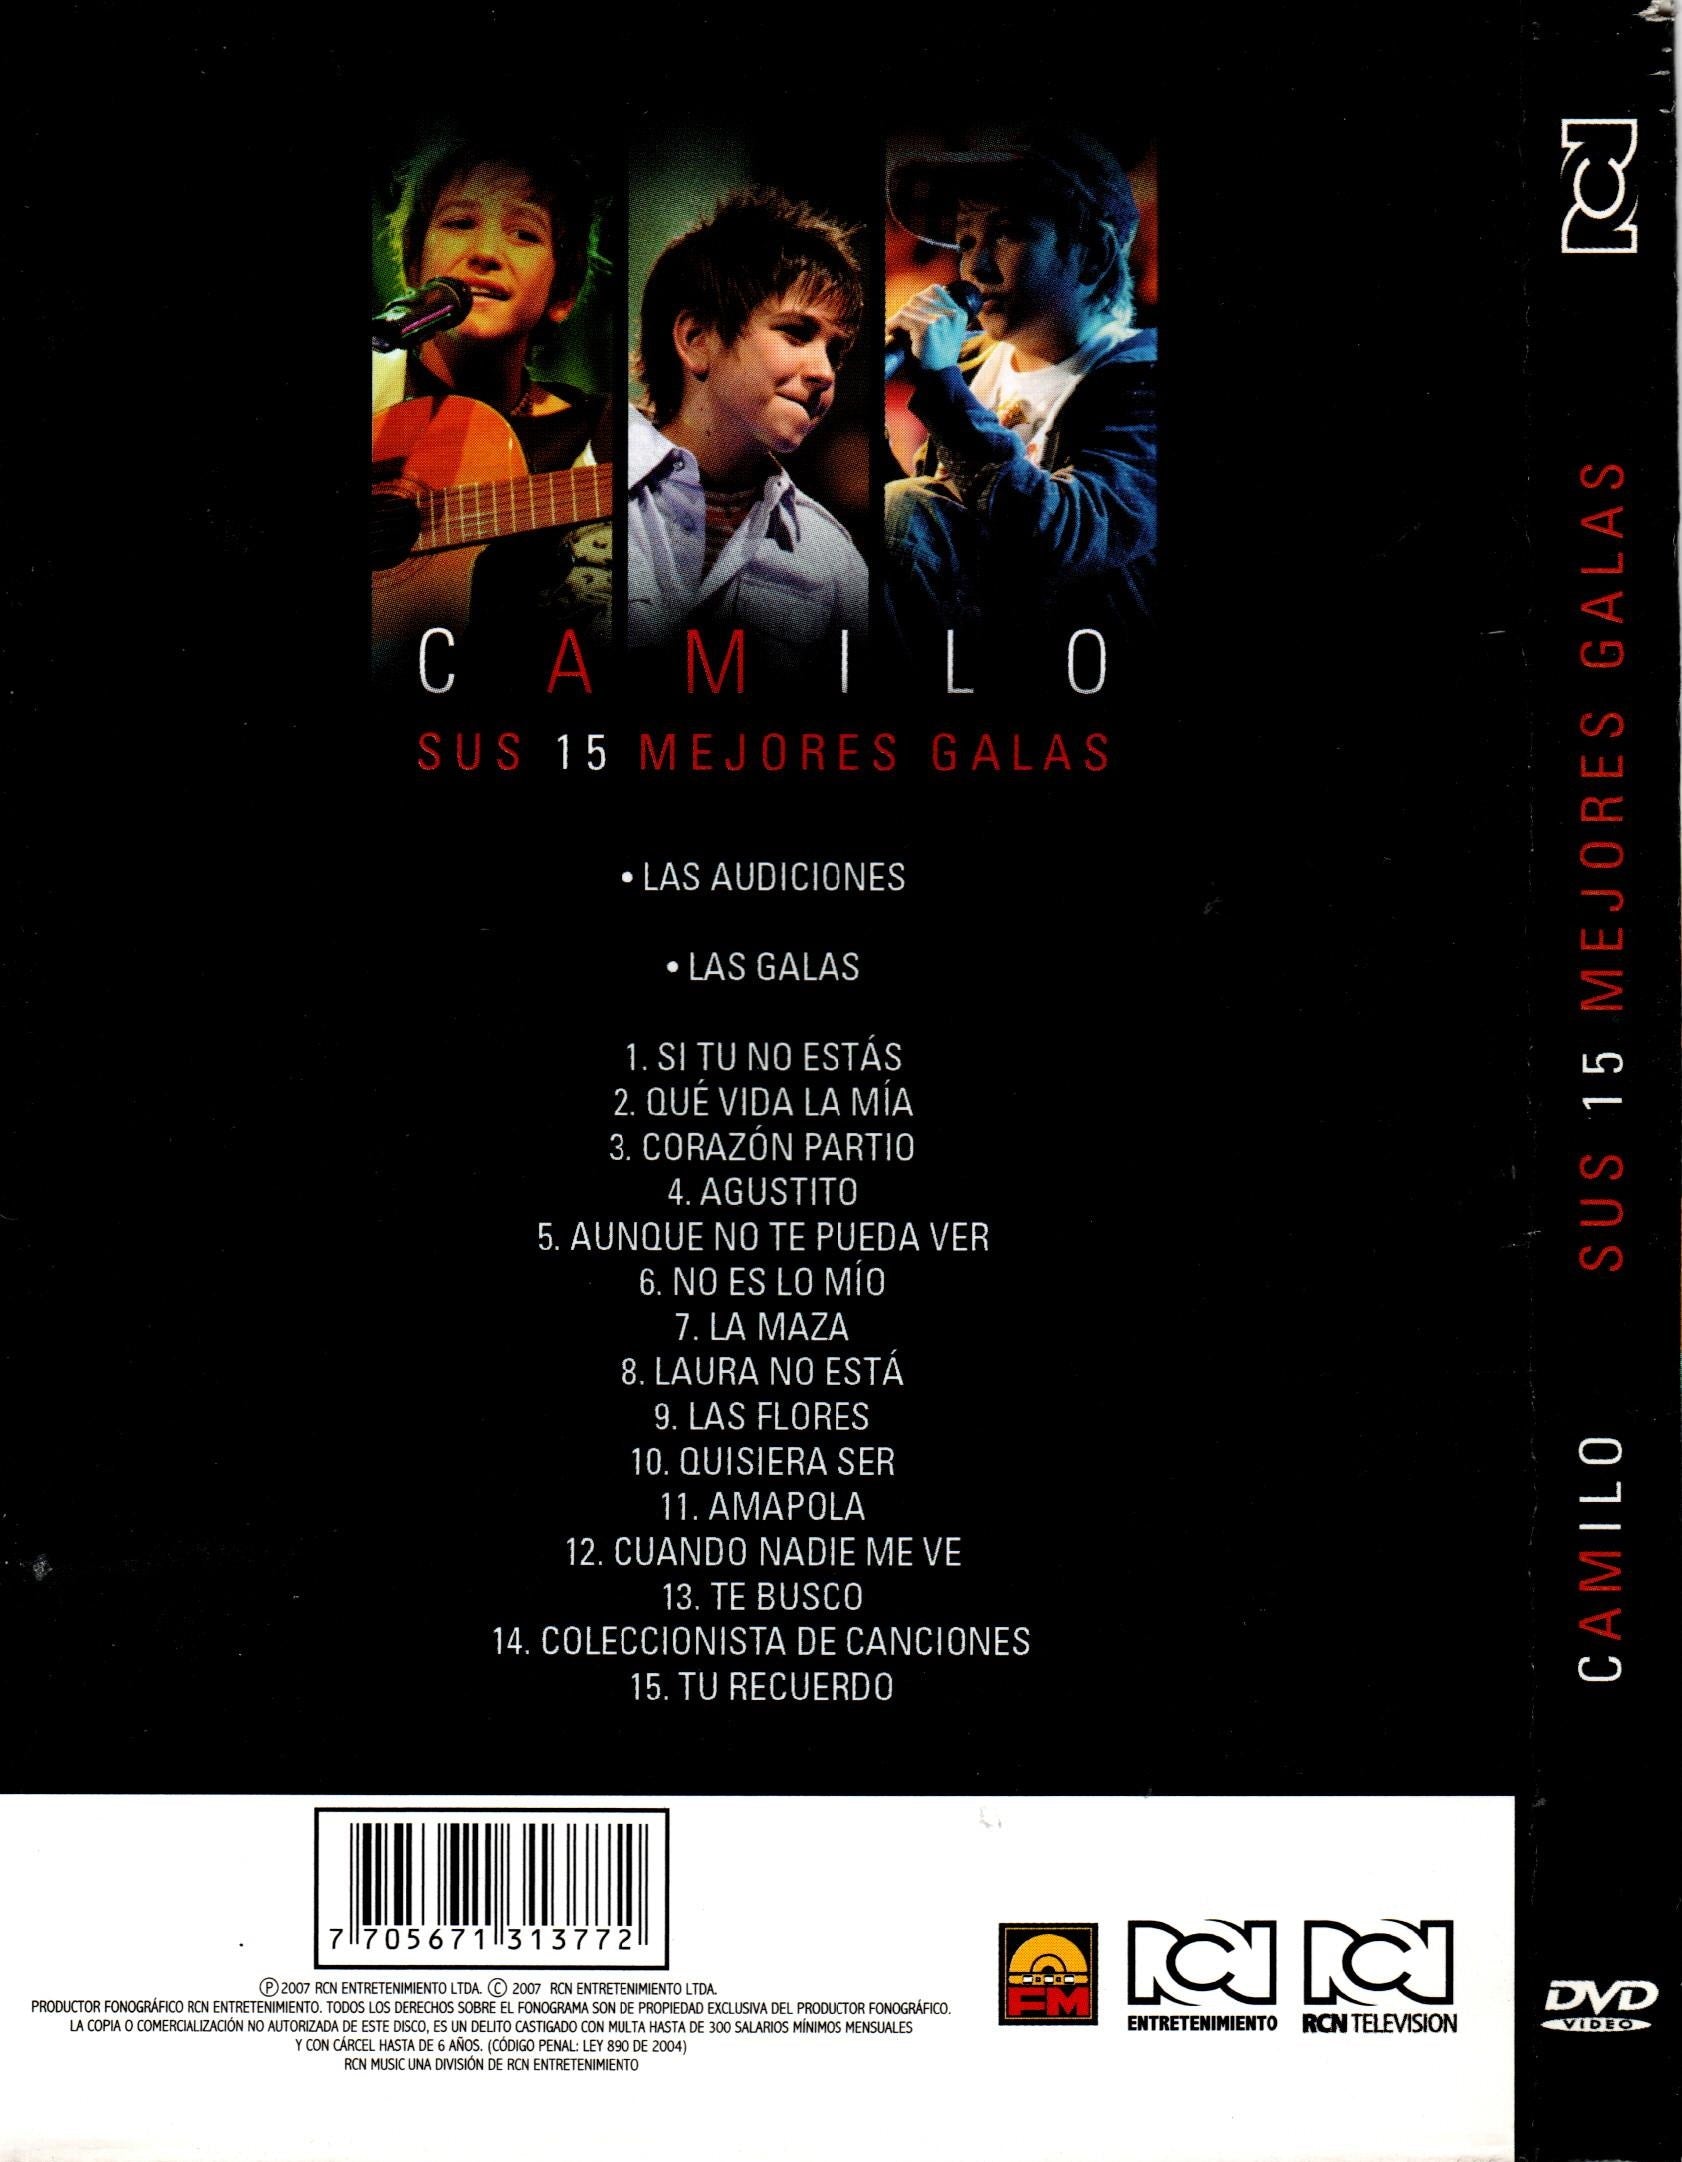 DVD CAMILO SUS 15 MEJORES GALAS